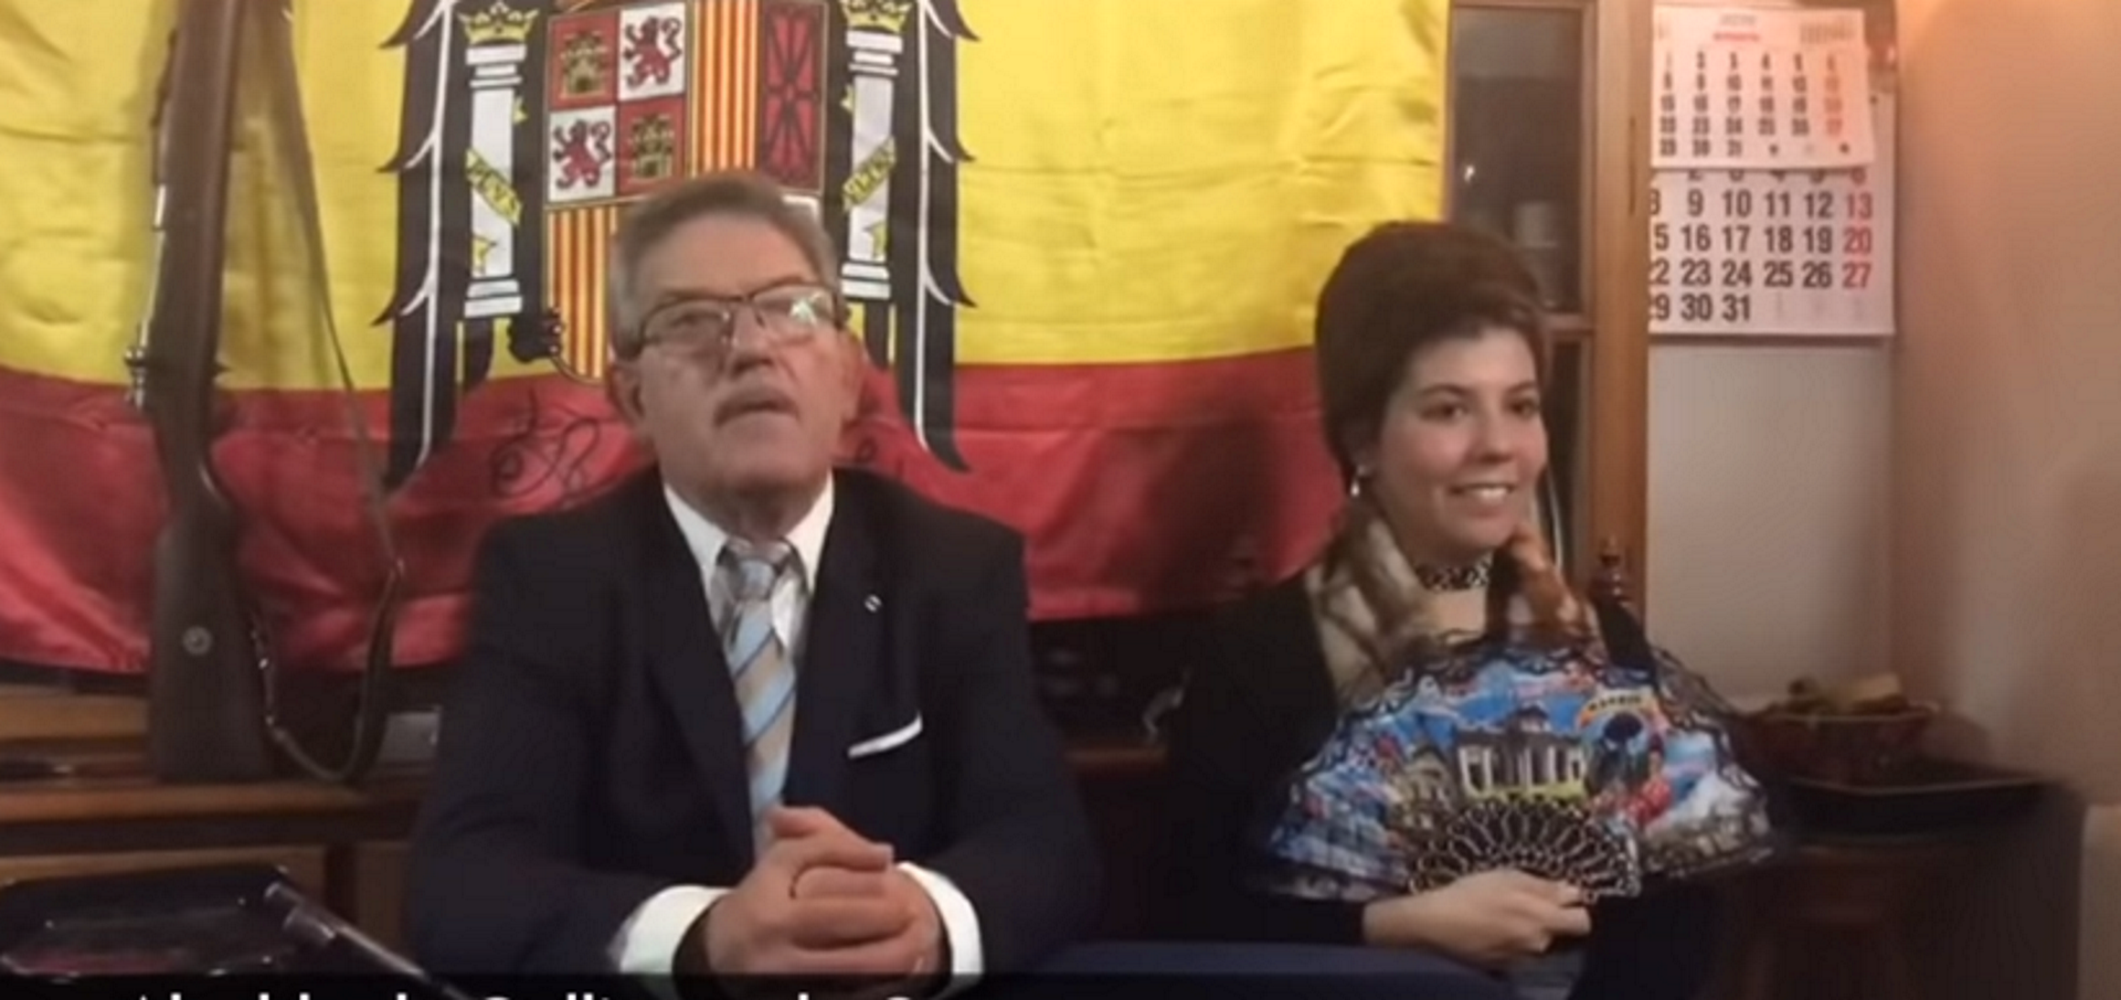 VÍDEO: Un alcalde del PP pronuncia un discurso disfrazado de Franco (y no pasa nada)